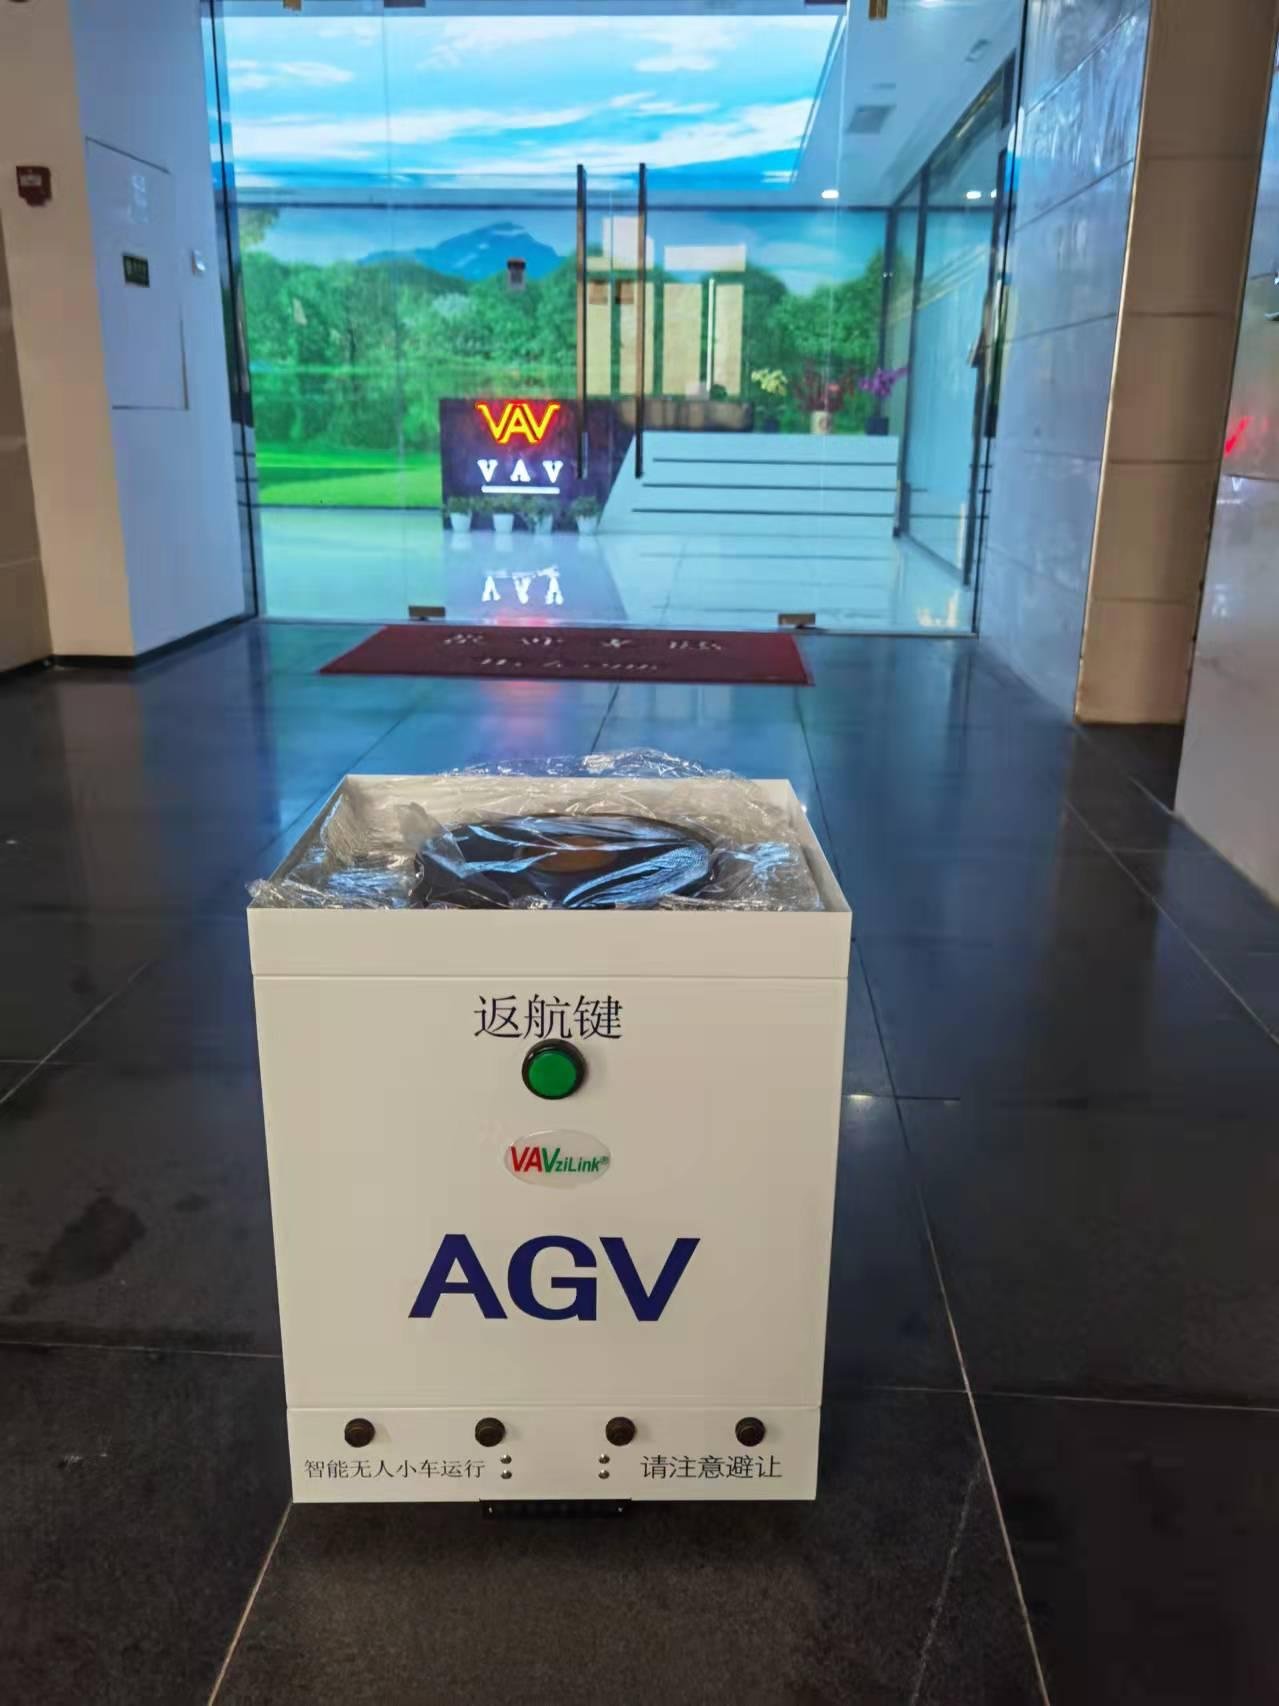 AGV Intelligent Porter